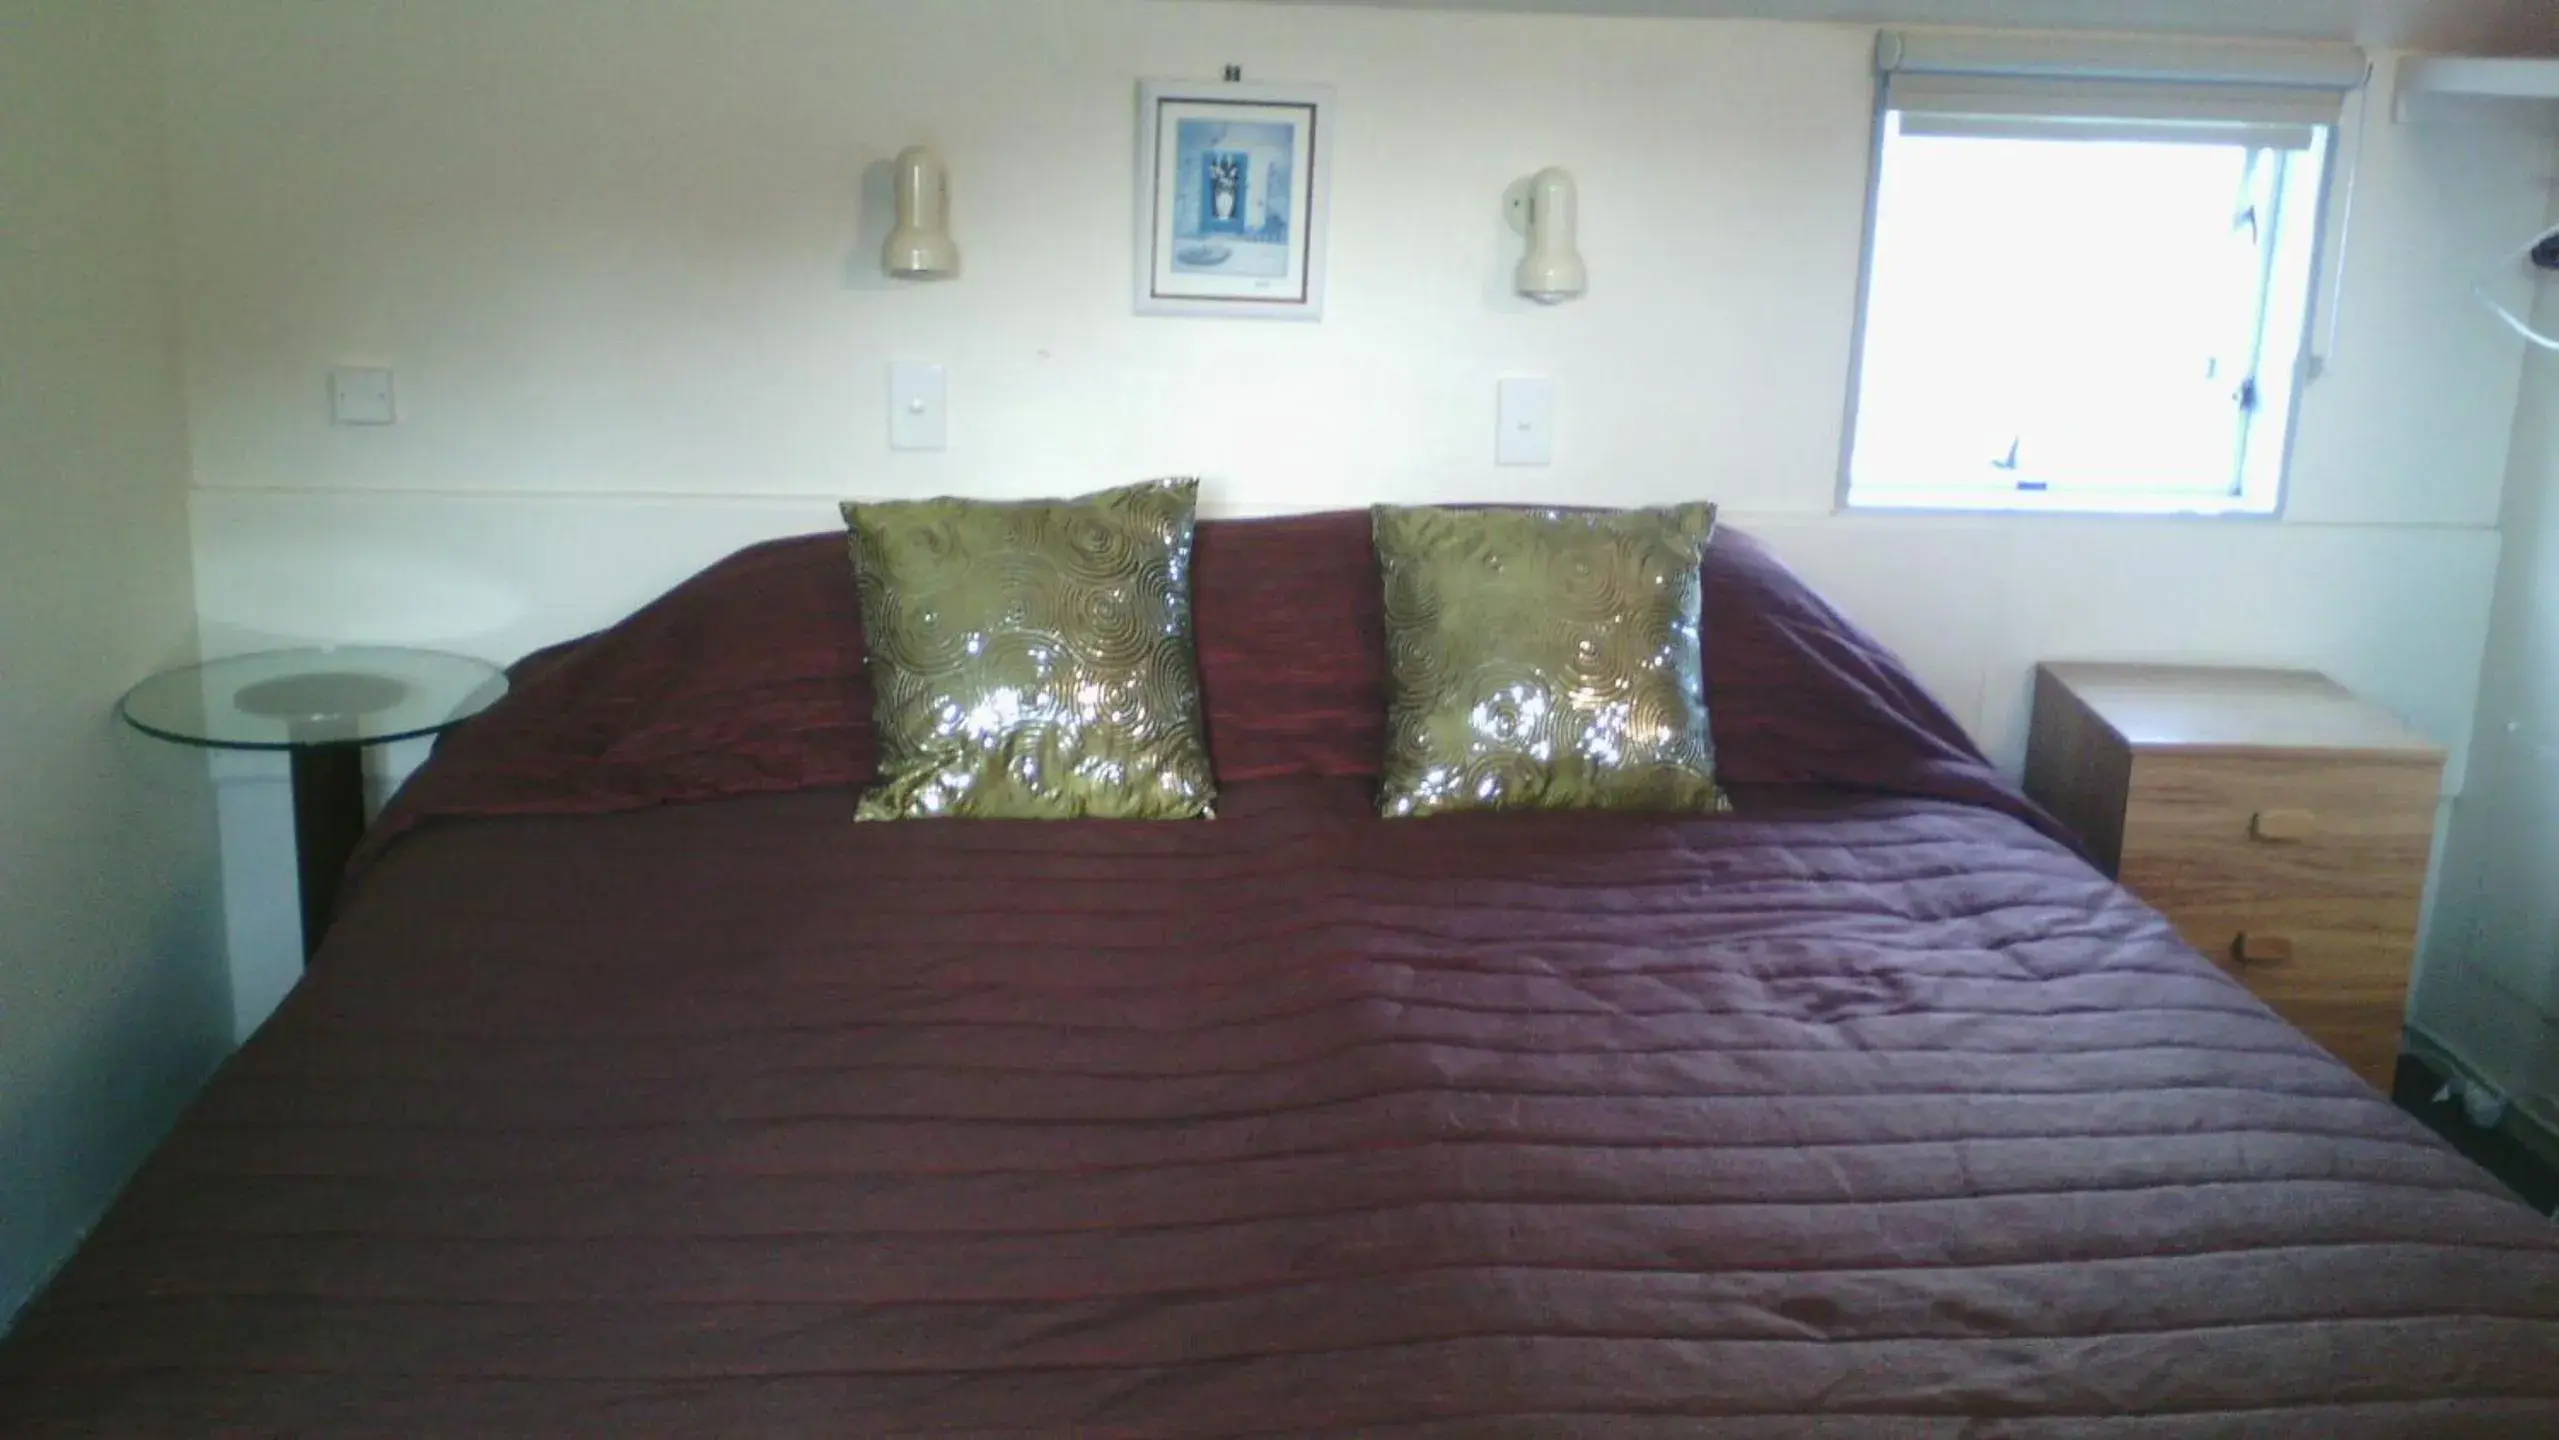 Bed in 747 Motel